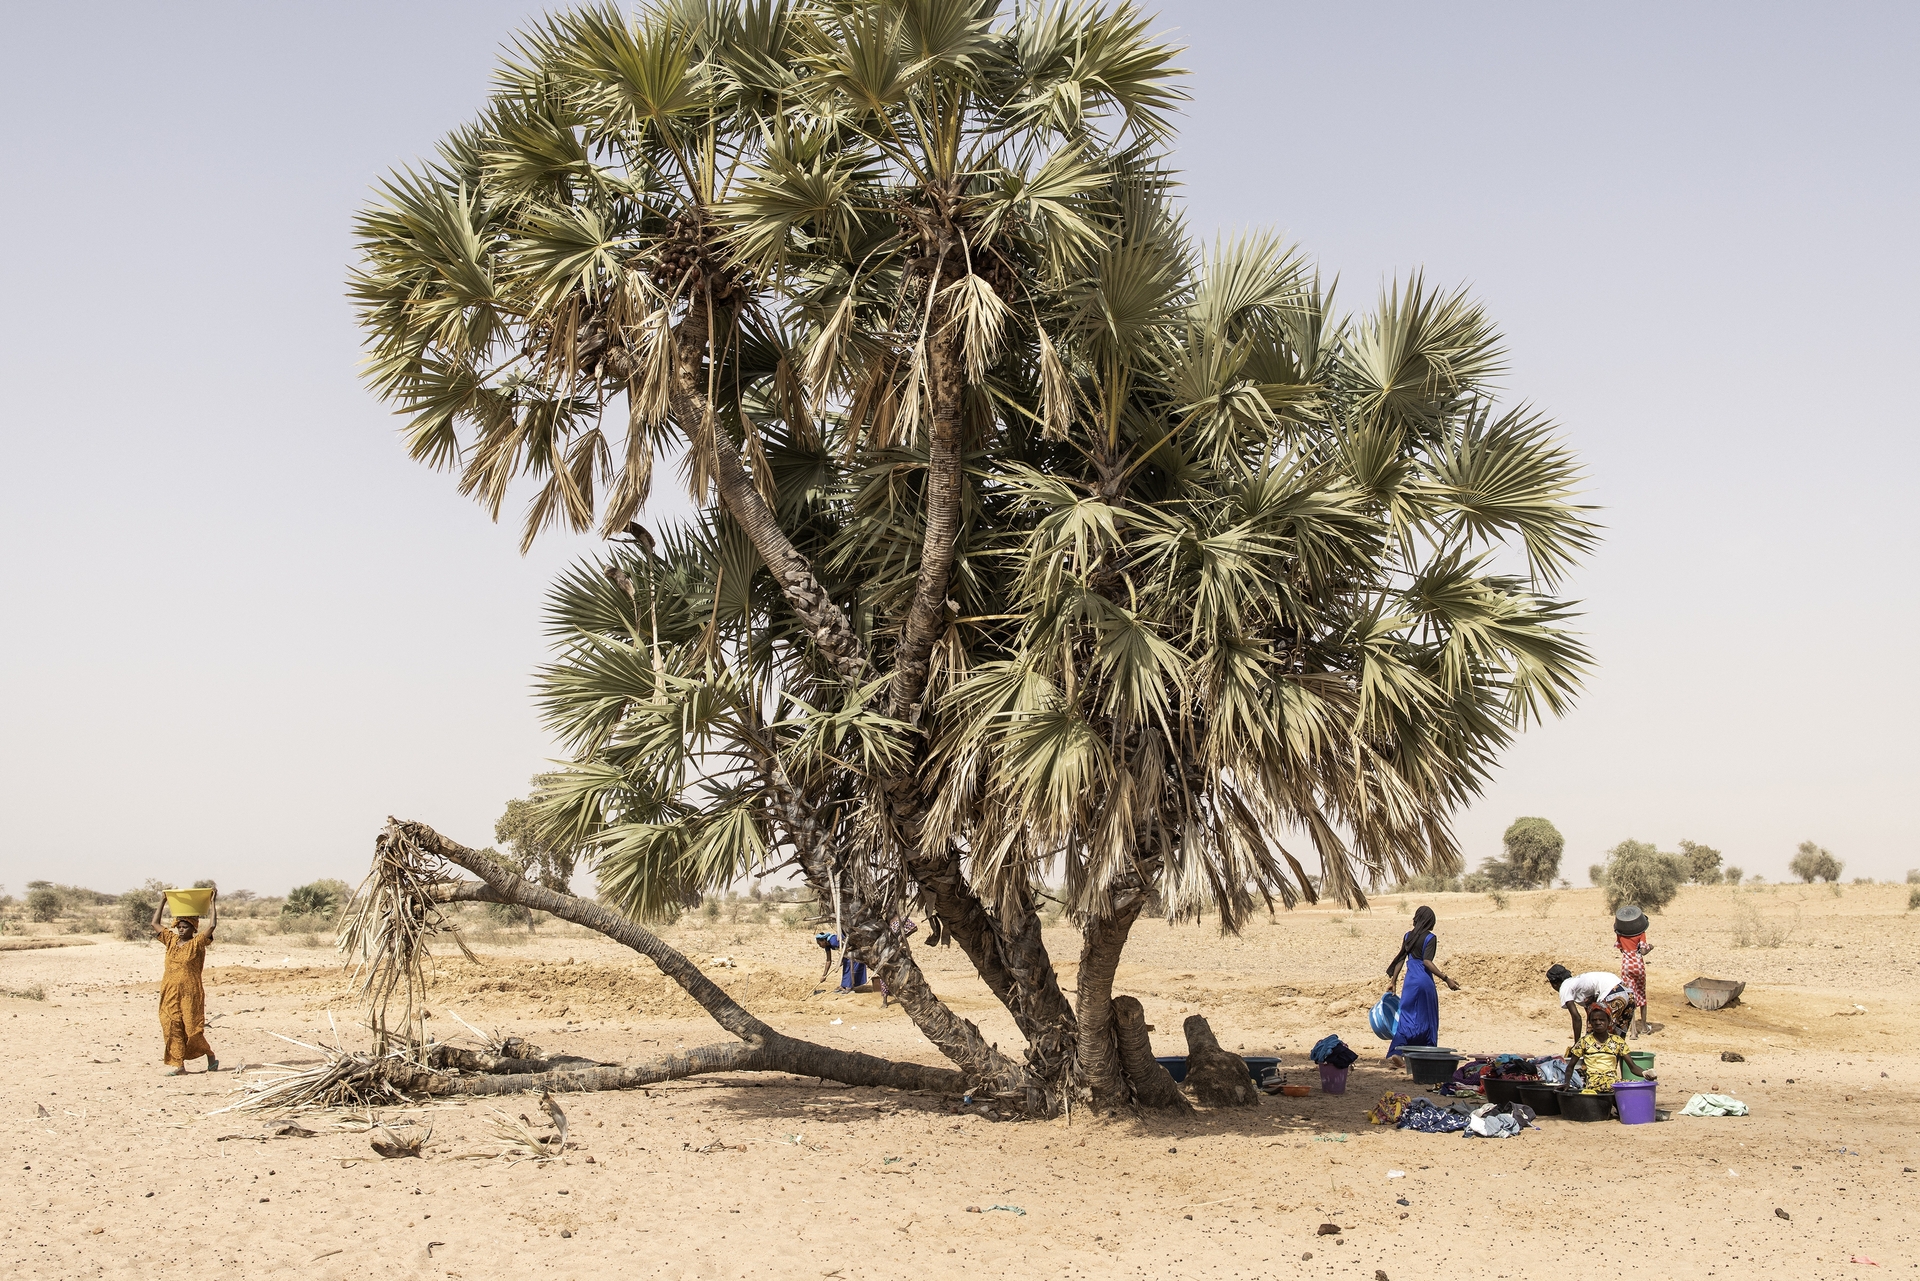 L’ondata di caldo mortale nell’Africa occidentale è “impossibile” senza una crisi climatica provocata dall’uomo – Job